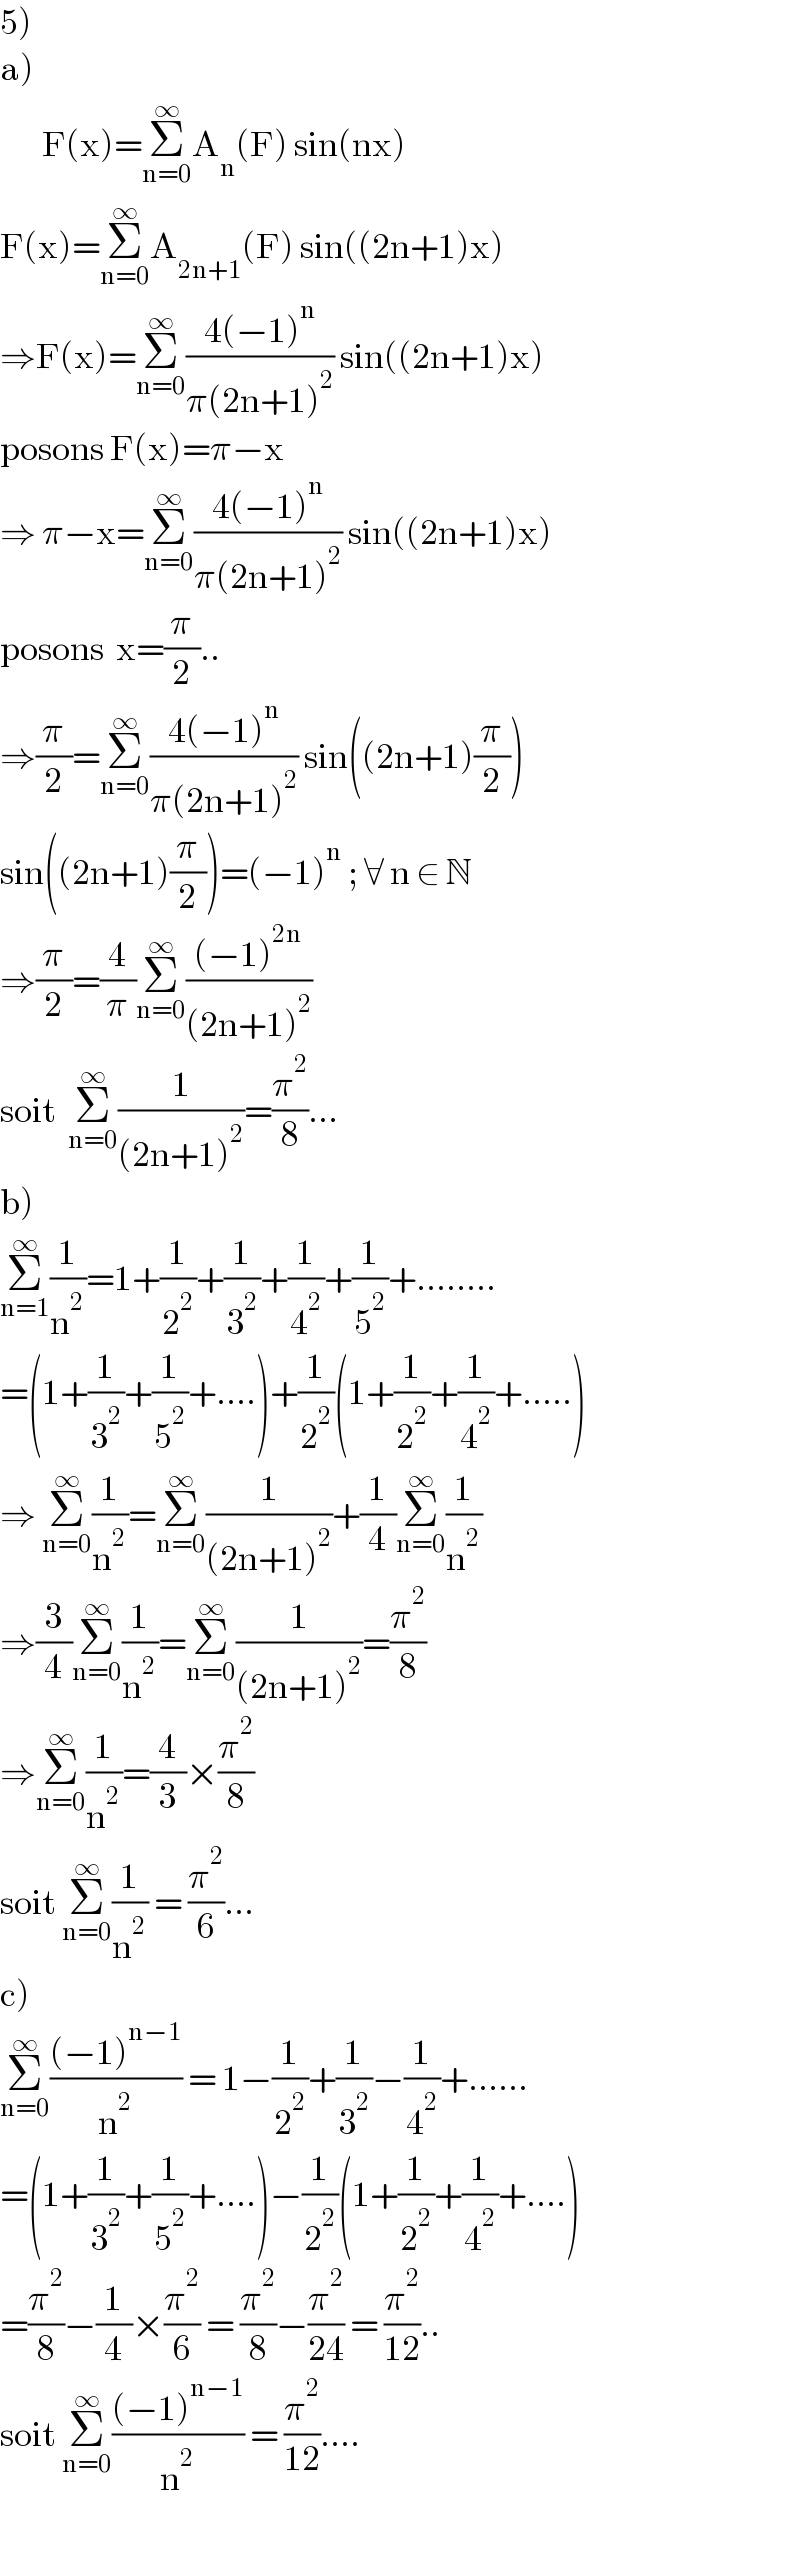 5)   a)         F(x)=Σ_(n=0) ^∞ A_n (F) sin(nx)  F(x)=Σ_(n=0) ^∞ A_(2n+1) (F) sin((2n+1)x)  ⇒F(x)=Σ_(n=0) ^∞ ((4(−1)^n )/(π(2n+1)^2 )) sin((2n+1)x)  posons F(x)=π−x  ⇒ π−x=Σ_(n=0) ^∞ ((4(−1)^n )/(π(2n+1)^2 )) sin((2n+1)x)  posons  x=(π/2)..  ⇒(π/2)=Σ_(n=0) ^∞ ((4(−1)^n )/(π(2n+1)^2 )) sin((2n+1)(π/2))  sin((2n+1)(π/2))=(−1)^n  ; ∀ n ∈ N  ⇒(π/2)=(4/π)Σ_(n=0) ^∞ (((−1)^(2n) )/((2n+1)^2 ))  soit  Σ_(n=0) ^∞ (1/((2n+1)^2 ))=(π^2 /8)...  b)  Σ_(n=1) ^∞ (1/n^2 )=1+(1/2^2 )+(1/3^2 )+(1/4^2 )+(1/5^2 )+........  =(1+(1/3^2 )+(1/5^2 )+....)+(1/2^2 )(1+(1/2^2 )+(1/4^2 )+.....)  ⇒ Σ_(n=0) ^∞ (1/n^2 )=Σ_(n=0) ^∞ (1/((2n+1)^2 ))+(1/4)Σ_(n=0) ^∞ (1/n^2 )  ⇒(3/4)Σ_(n=0) ^∞ (1/n^2 )=Σ_(n=0) ^∞ (1/((2n+1)^2 ))=(π^2 /8)  ⇒Σ_(n=0) ^∞ (1/n^2 )=(4/3)×(π^2 /8)  soit Σ_(n=0) ^∞ (1/n^2 ) = (π^2 /6)...  c)  Σ_(n=0) ^∞ (((−1)^(n−1) )/n^2 ) = 1−(1/2^2 )+(1/3^2 )−(1/4^2 )+......  =(1+(1/3^2 )+(1/5^2 )+....)−(1/2^2 )(1+(1/2^2 )+(1/4^2 )+....)  =(π^2 /8)−(1/4)×(π^2 /6) = (π^2 /8)−(π^2 /(24)) = (π^2 /(12))..  soit Σ_(n=0) ^∞ (((−1)^(n−1) )/n^2 ) = (π^2 /(12))....  